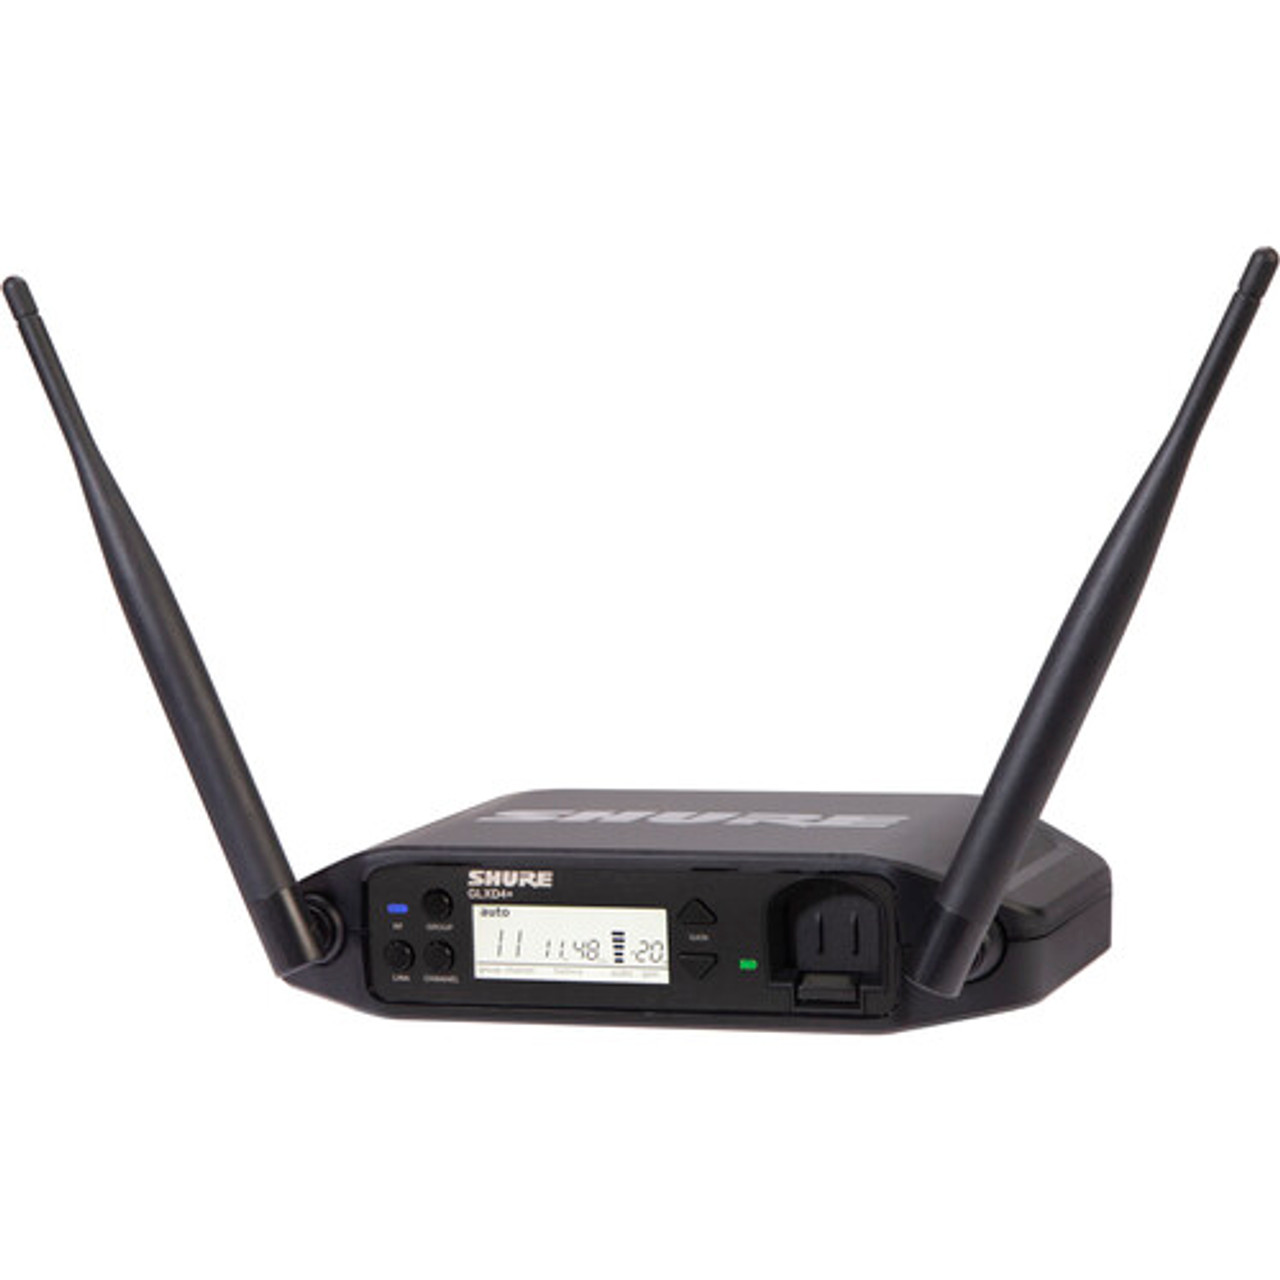 Shure GLXD14+ Dual-Band Wireless Fitness Headset System (Z3: 2.4, 5.8 GHz) (GLXD14+/SM31-Z3)